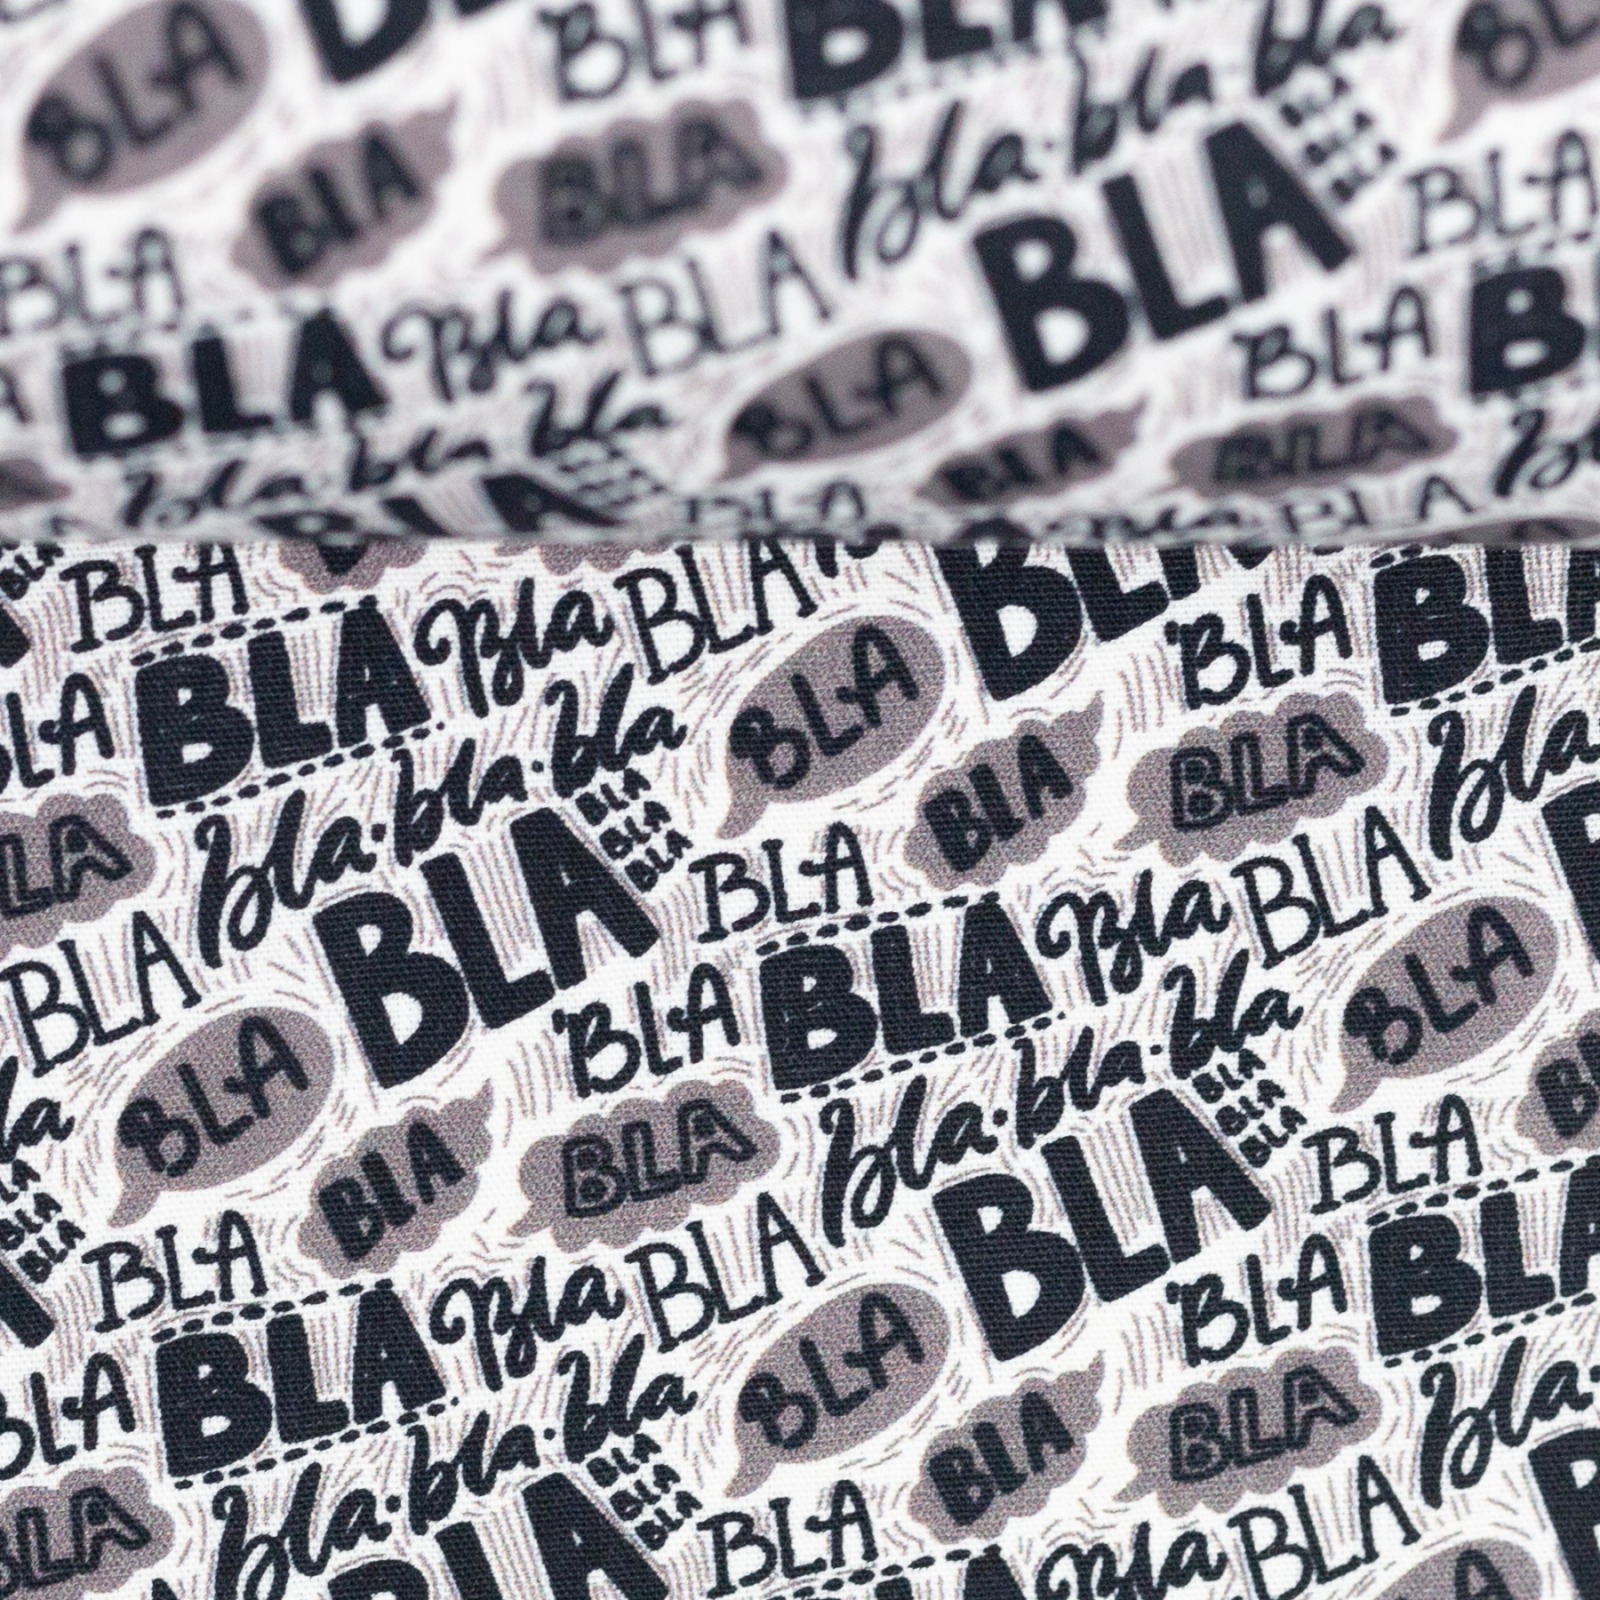 Baumwolle 960 EUR/m Bla bla Bla Schriftzug dunkelgrau auf weiß Stoff Meterware Swafing Kim 3